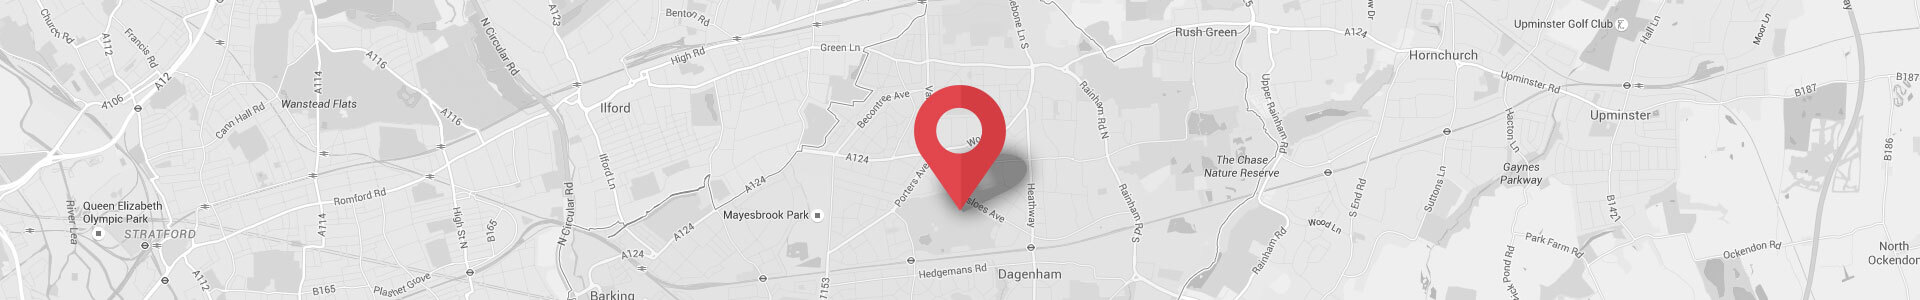 Barking and Dagenham map